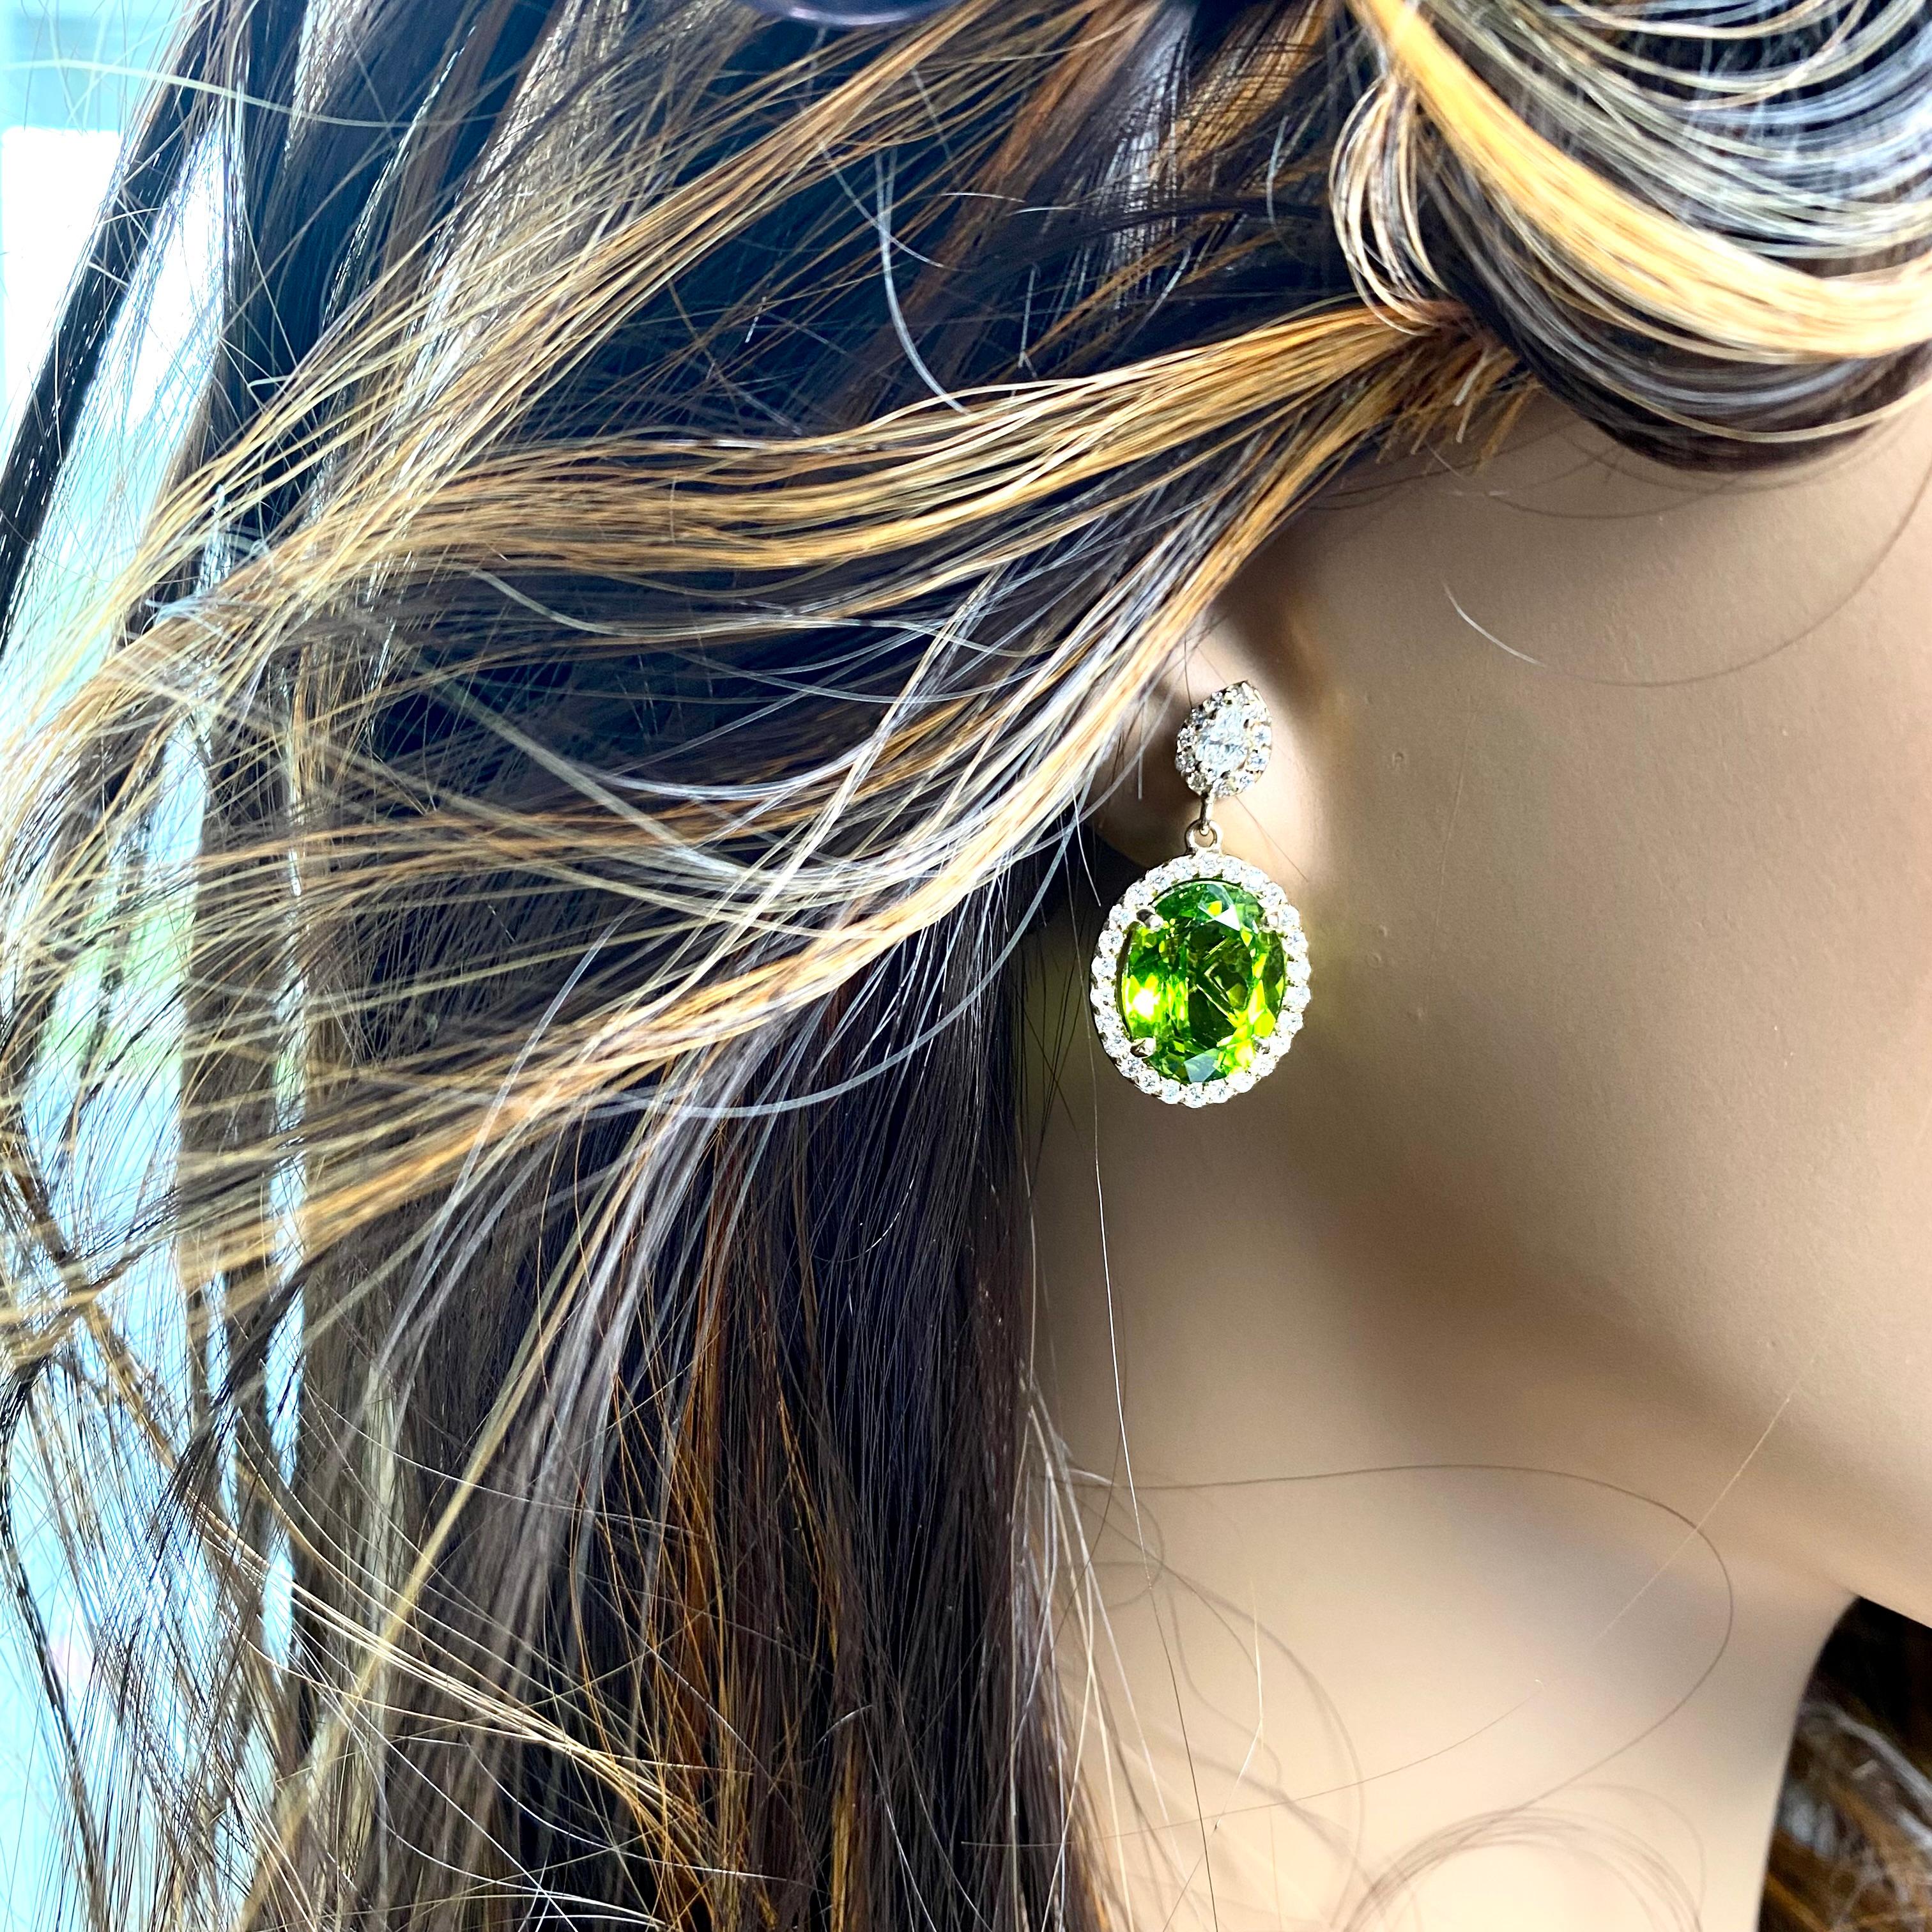 Wir präsentieren unser exquisites Paar Peridots 13.10 Carat Pear Diamonds Halo Setting 1.10 Inch Drop Earrings! Diese atemberaubenden Ohrringe verleihen jedem Outfit einen Hauch von Eleganz und Raffinesse.
Die mit viel Liebe zum Detail gefertigten